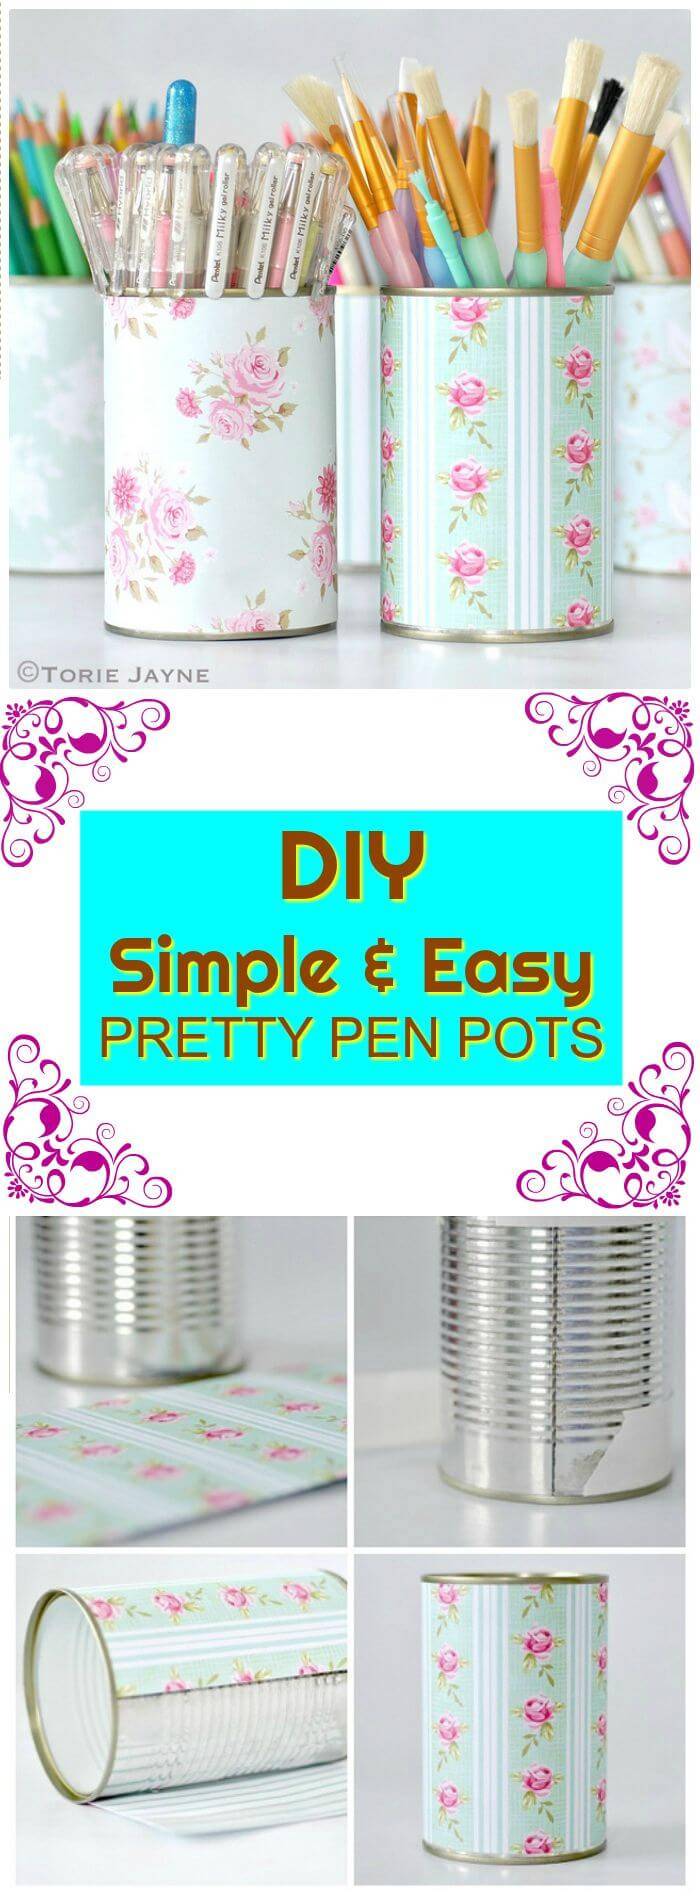 Simple And Easy Pretty DIY Pen Pots